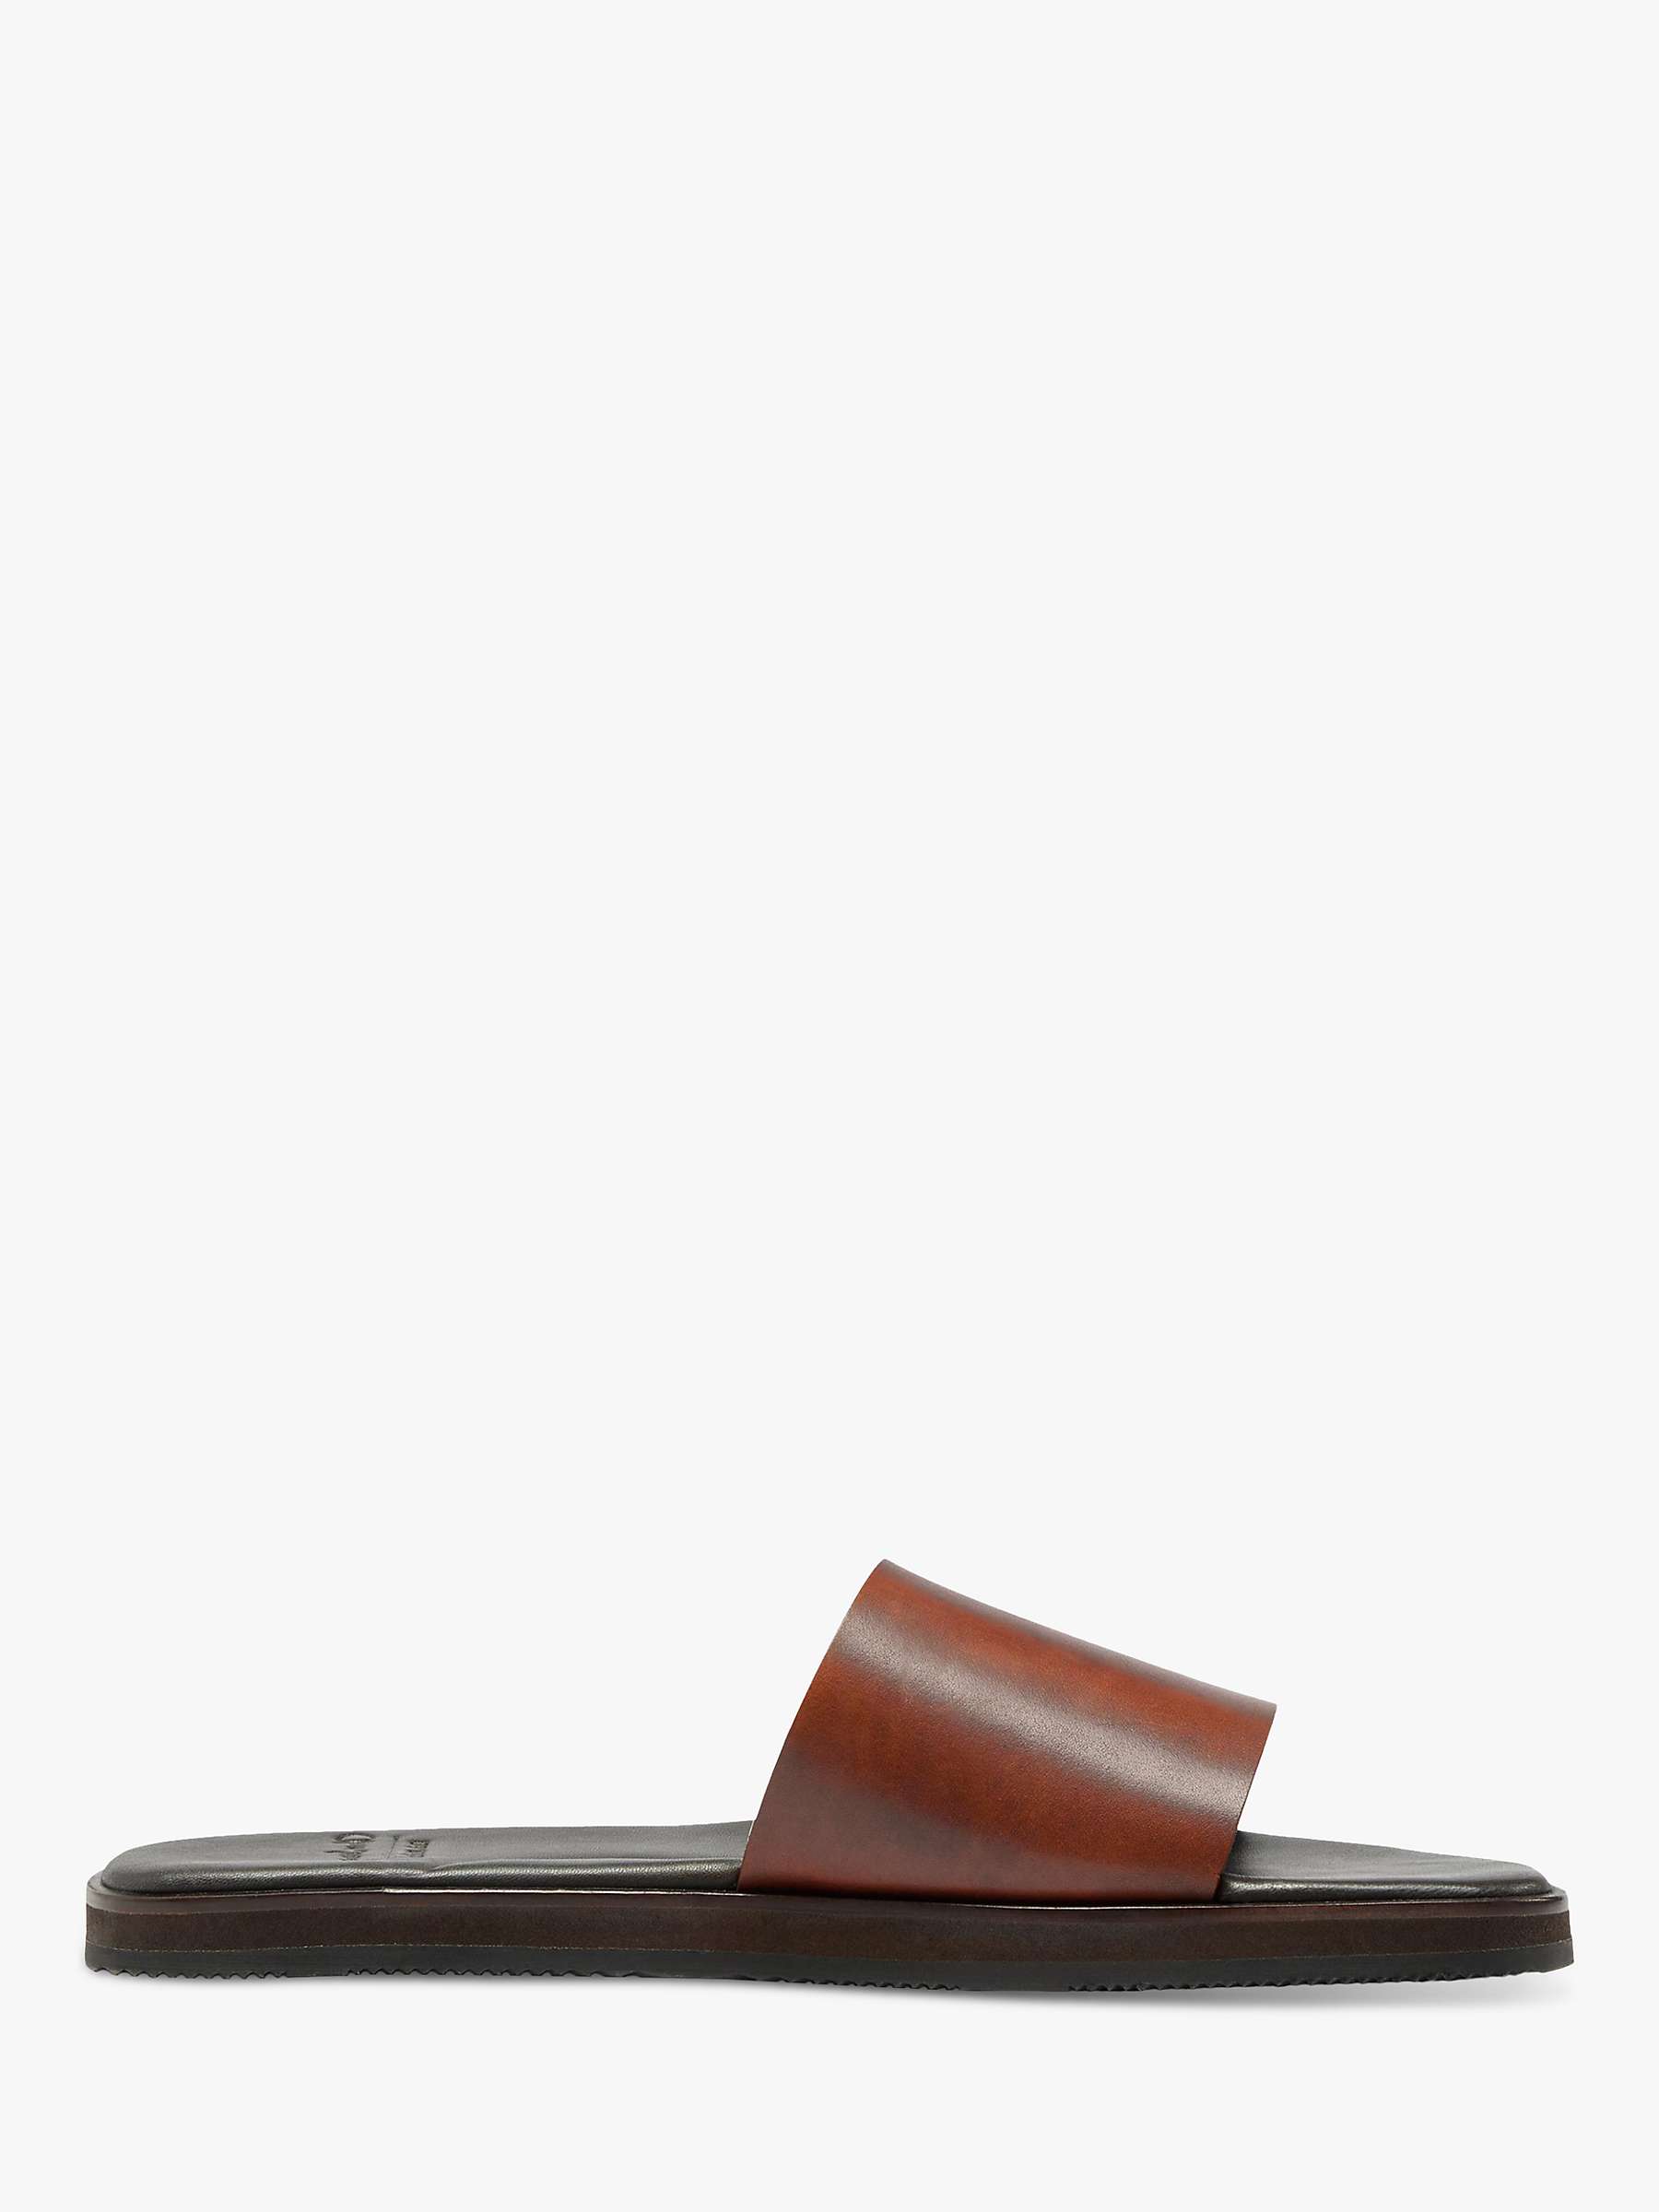 Buy Oliver Sweeney Blythe Leather Slide Sandals, Tan Online at johnlewis.com